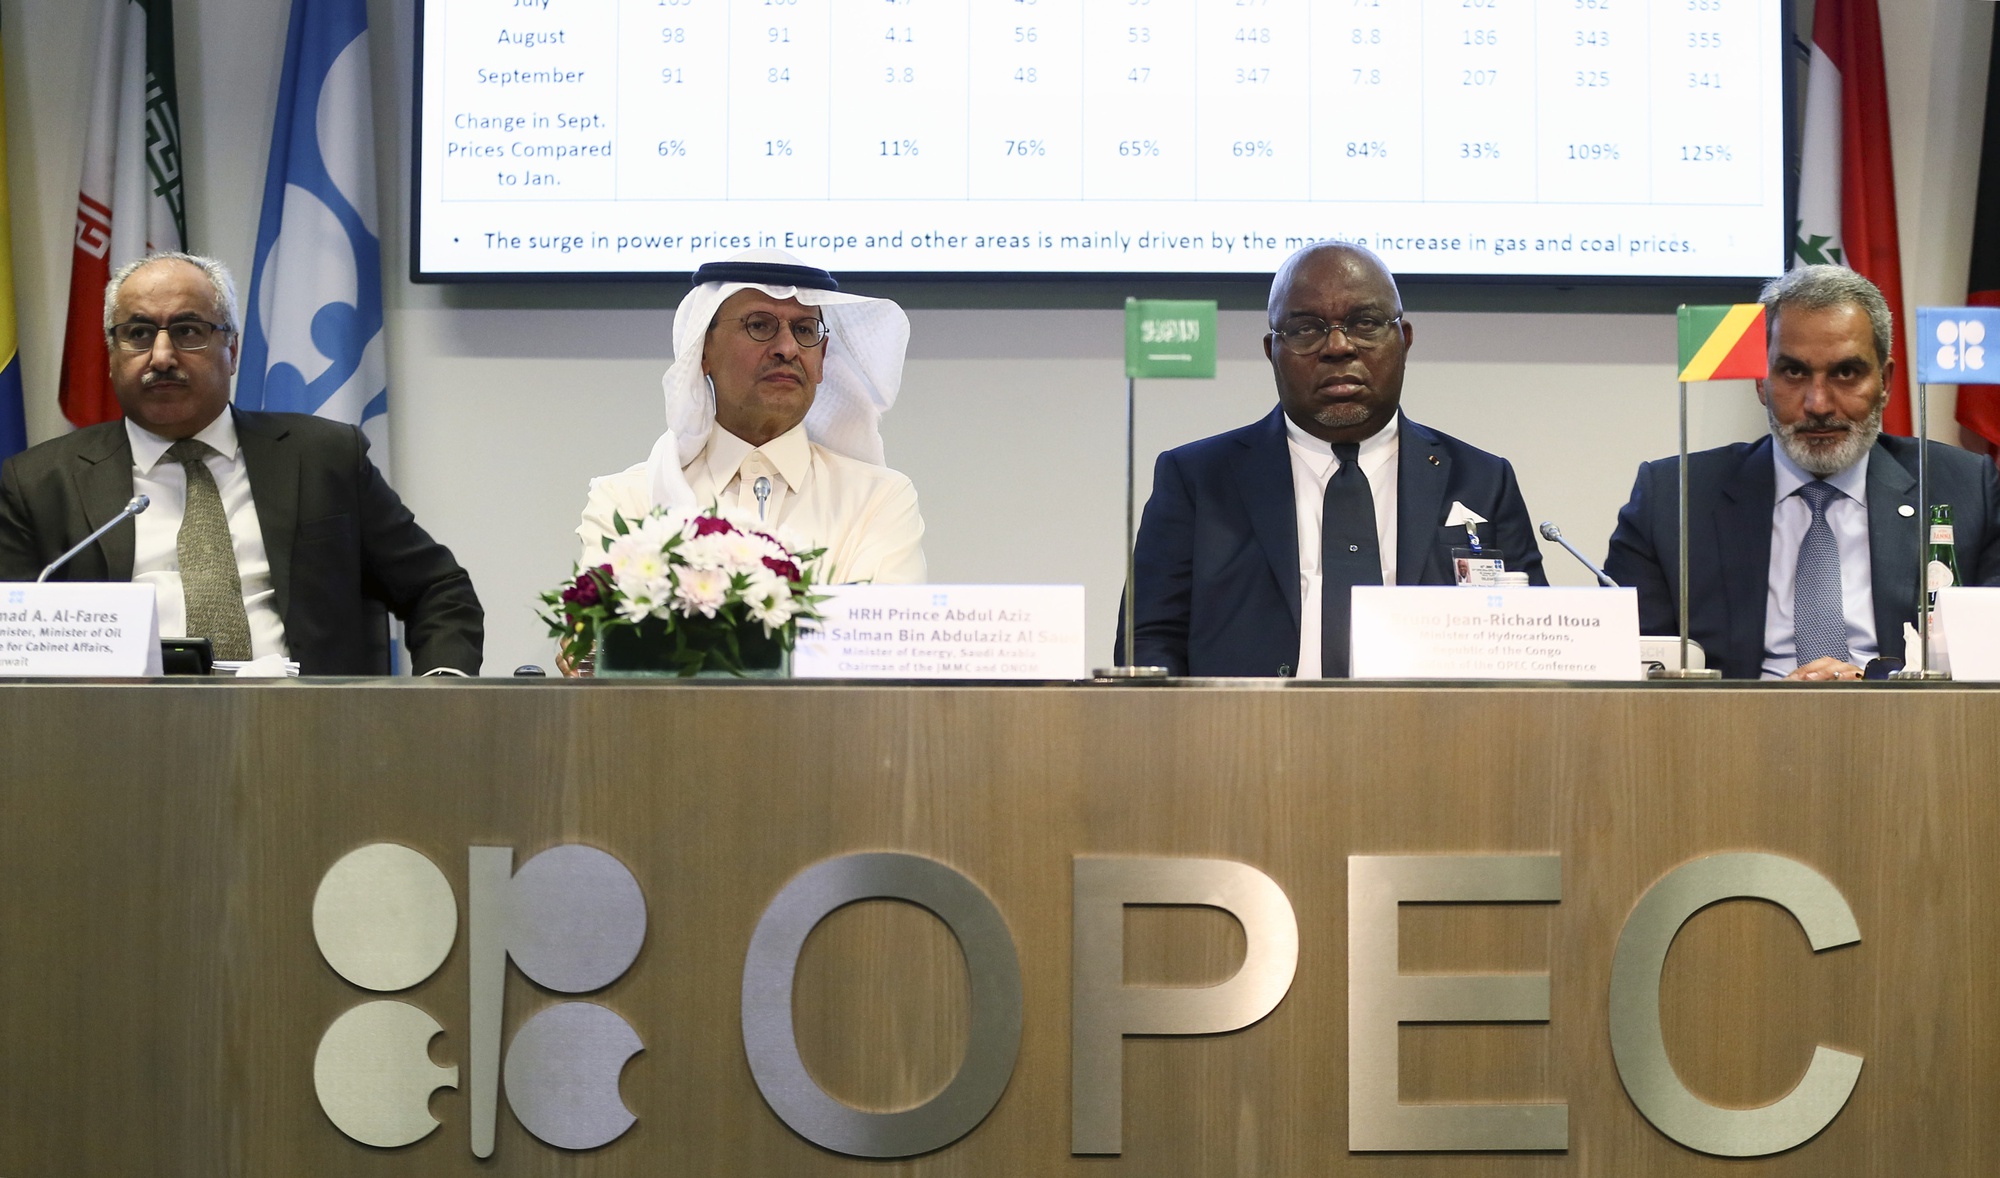 Tuyên bố của Tổ chức OPEC Plus (OPEC+) do Ả Rập Xê-út dẫn đầu khẳng định sẽ cắt giảm sản lượng dầu đã được nhiều người xem như là một cú đâm sau lưng Tổng thống Mỹ Biden. Ảnh: @AFP.